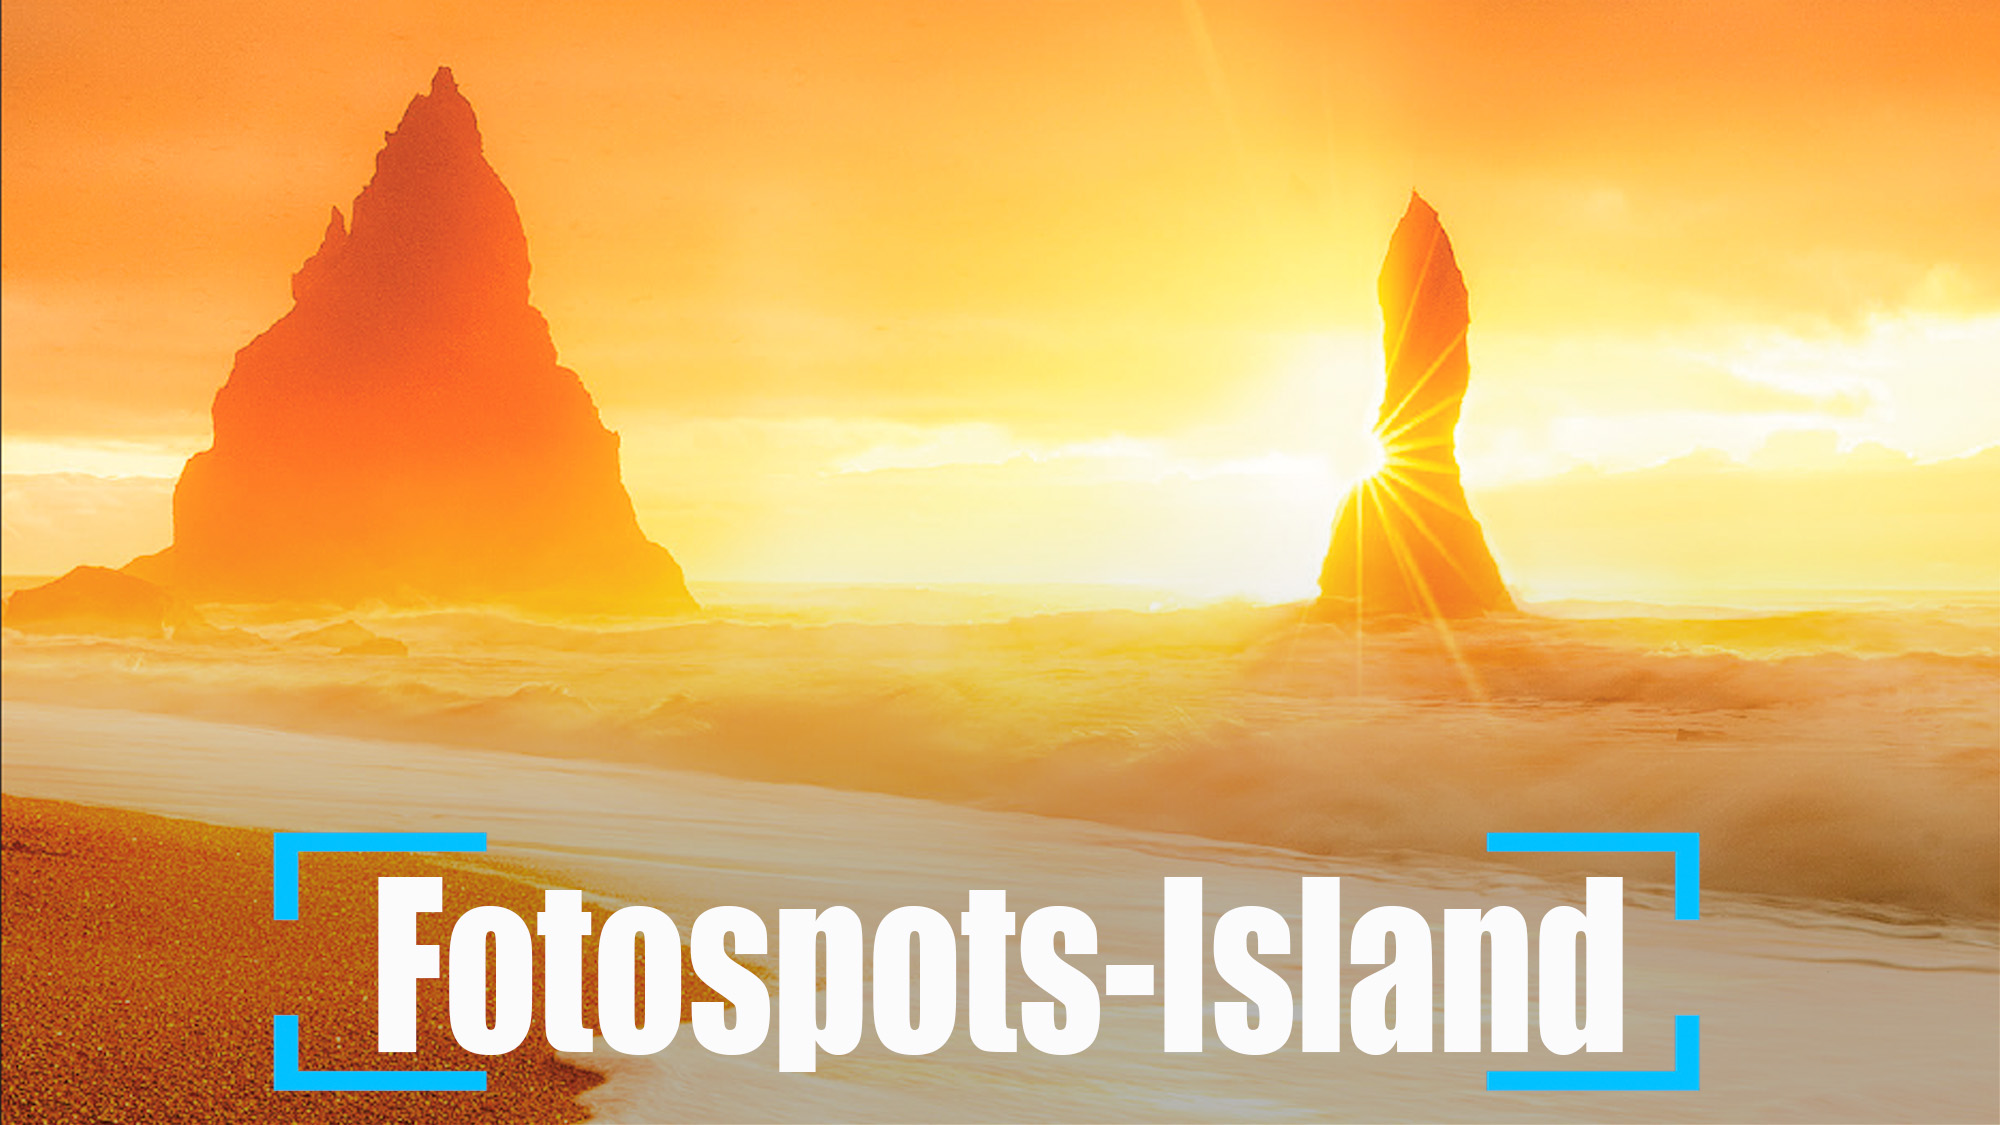 Island Fotospots zum Fotografieren auf der Fotoreise